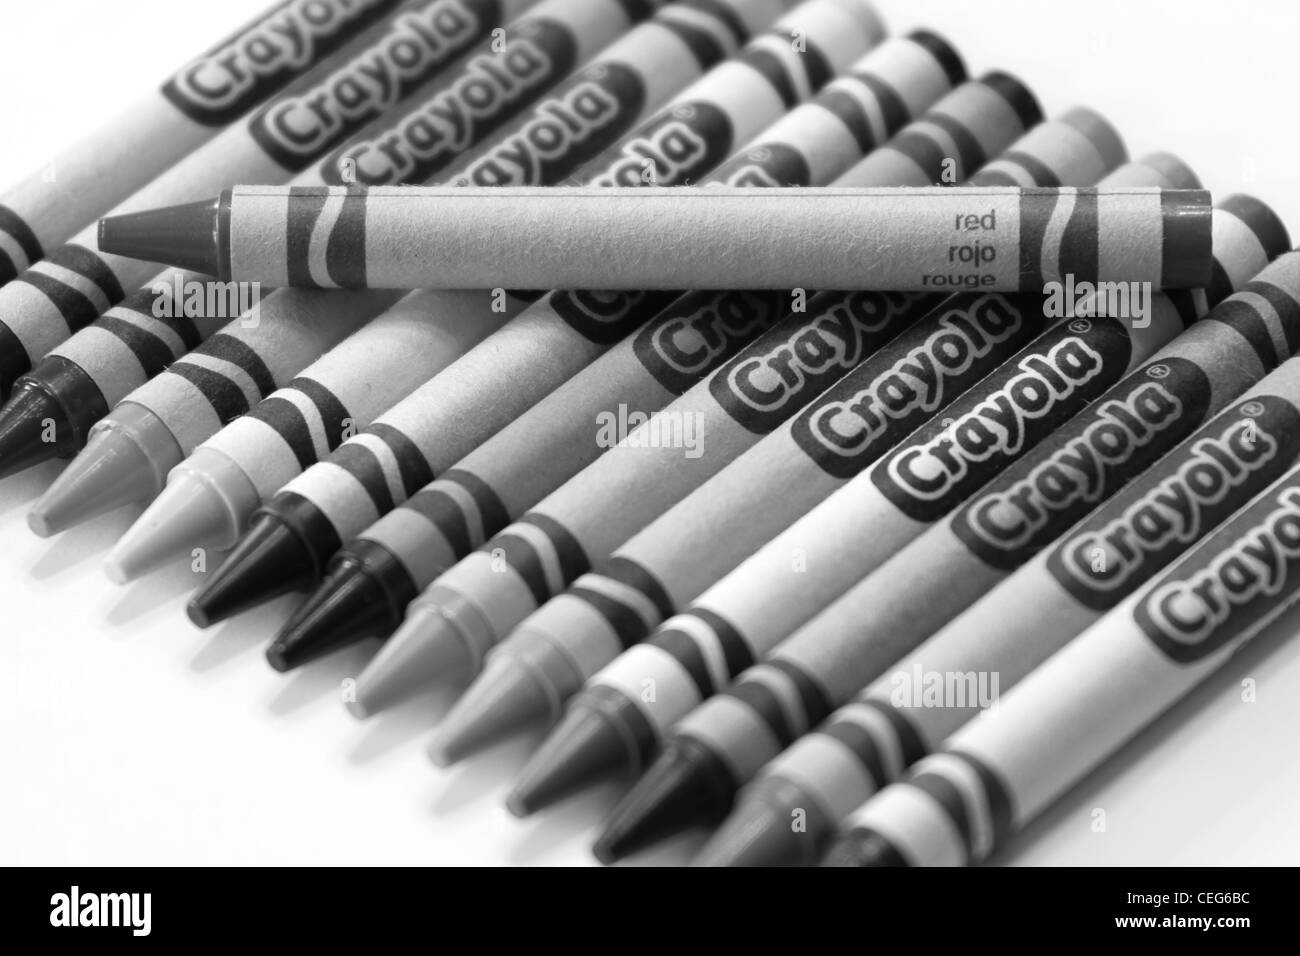 Rote Kreide in schwarz und weiß. Crayola Marke Buntstifte Stockfotografie -  Alamy